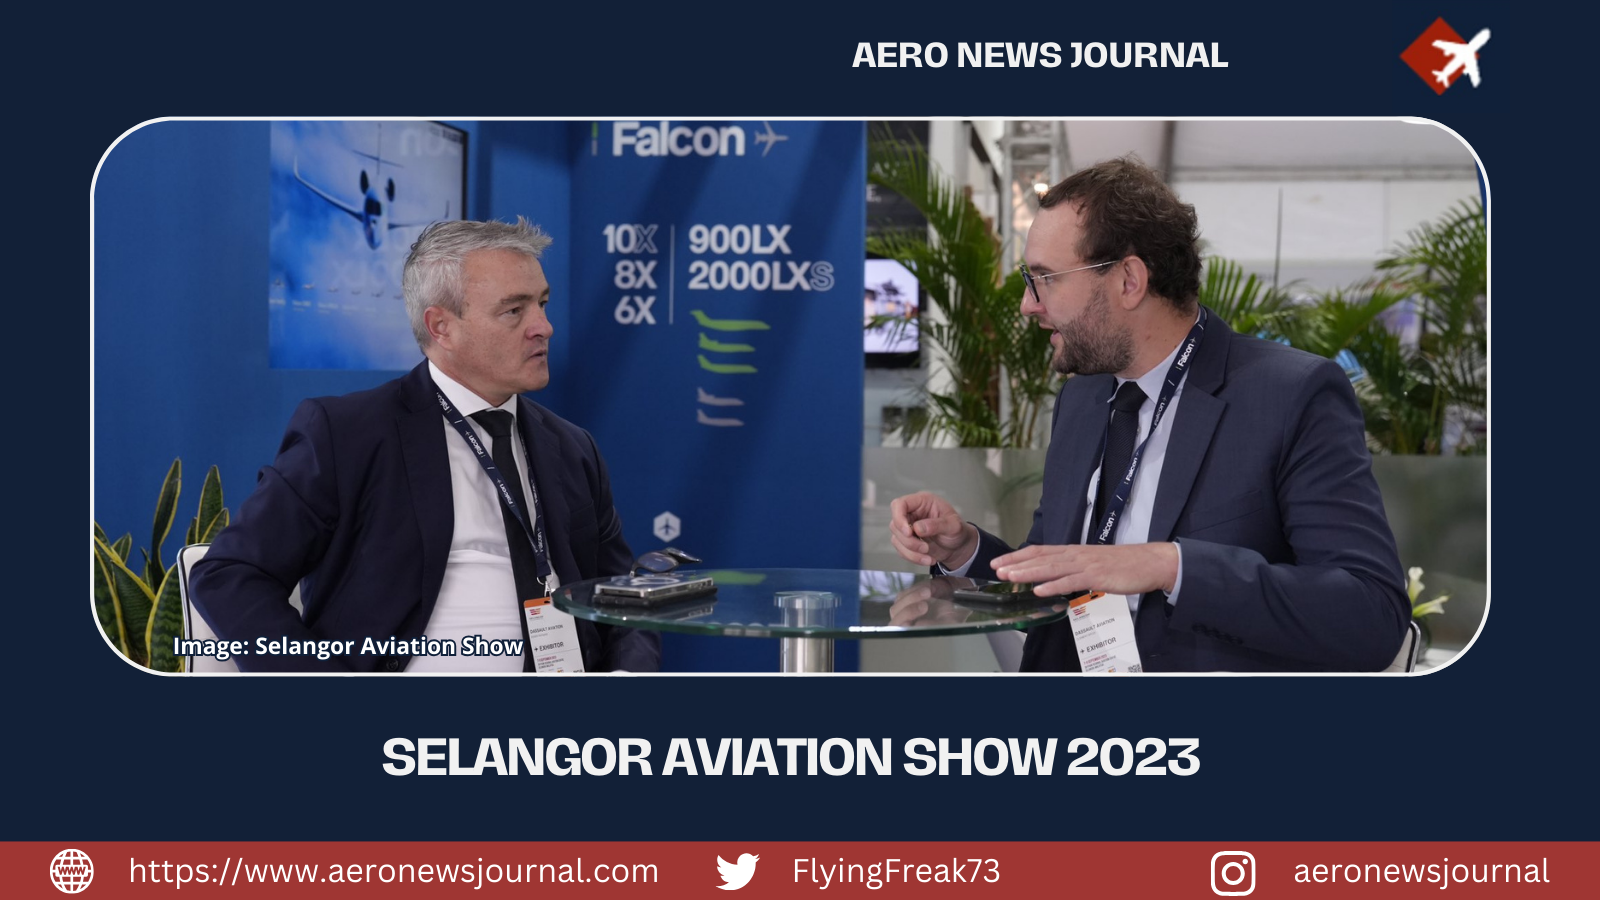 Selangor Aviation Show 2023